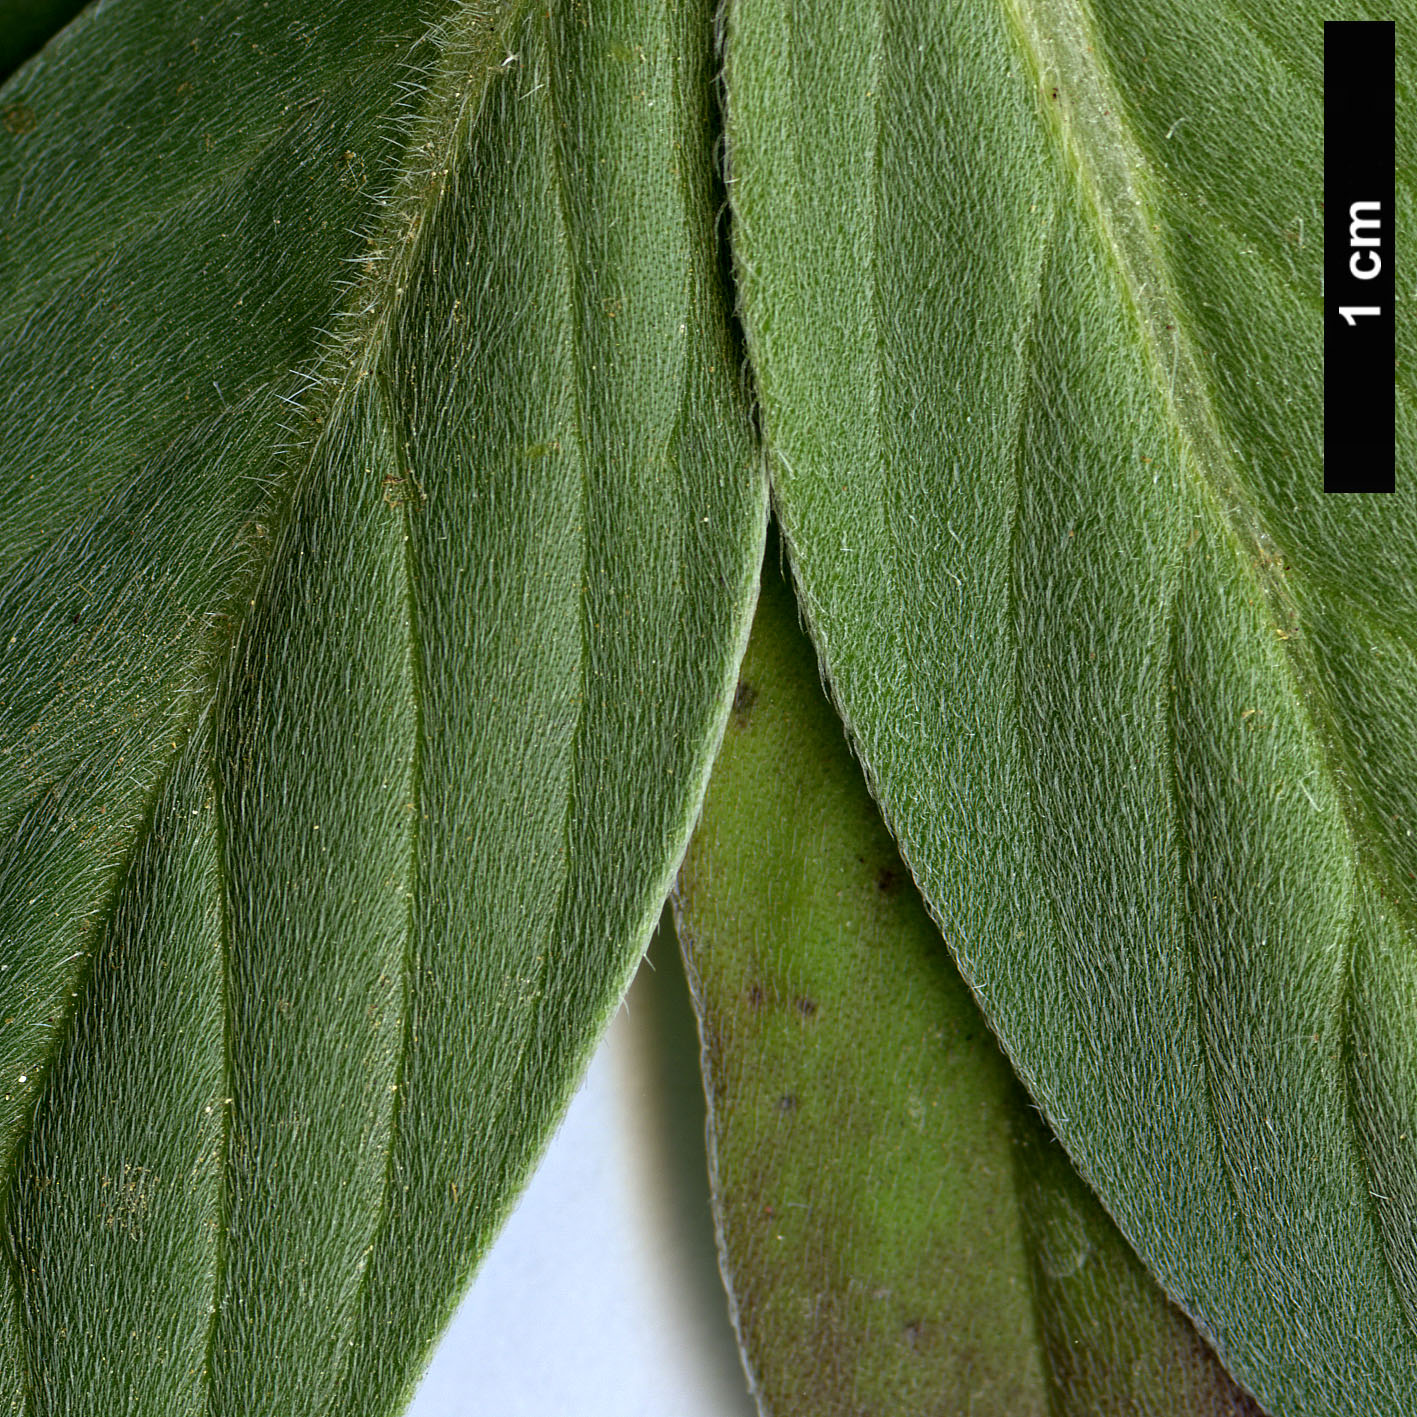 High resolution image: Family: Boraginaceae - Genus: Echium - Taxon: hierrense